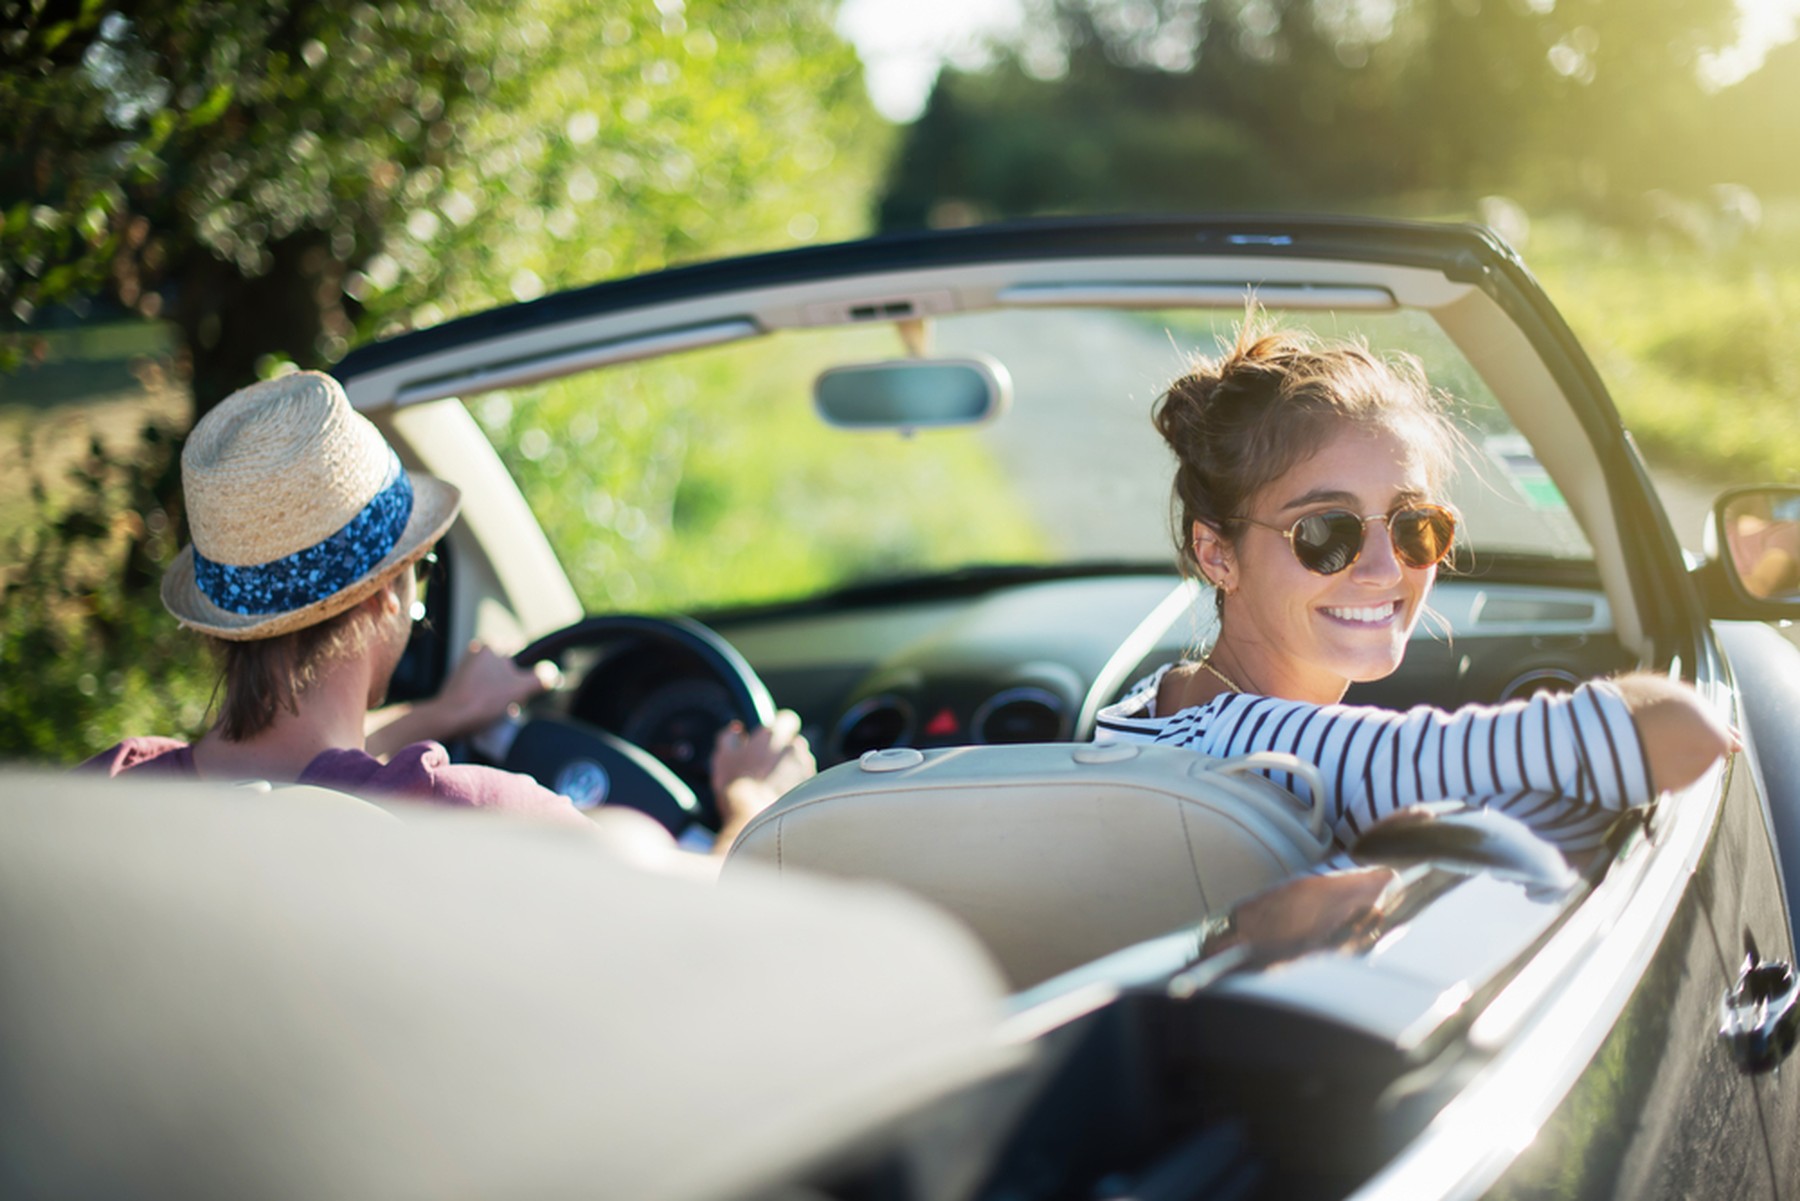 Dos chicas jóvenes en un coche descapotable. La copiloto está mirando hacia atrás sonriendo con unas gafas de sol.